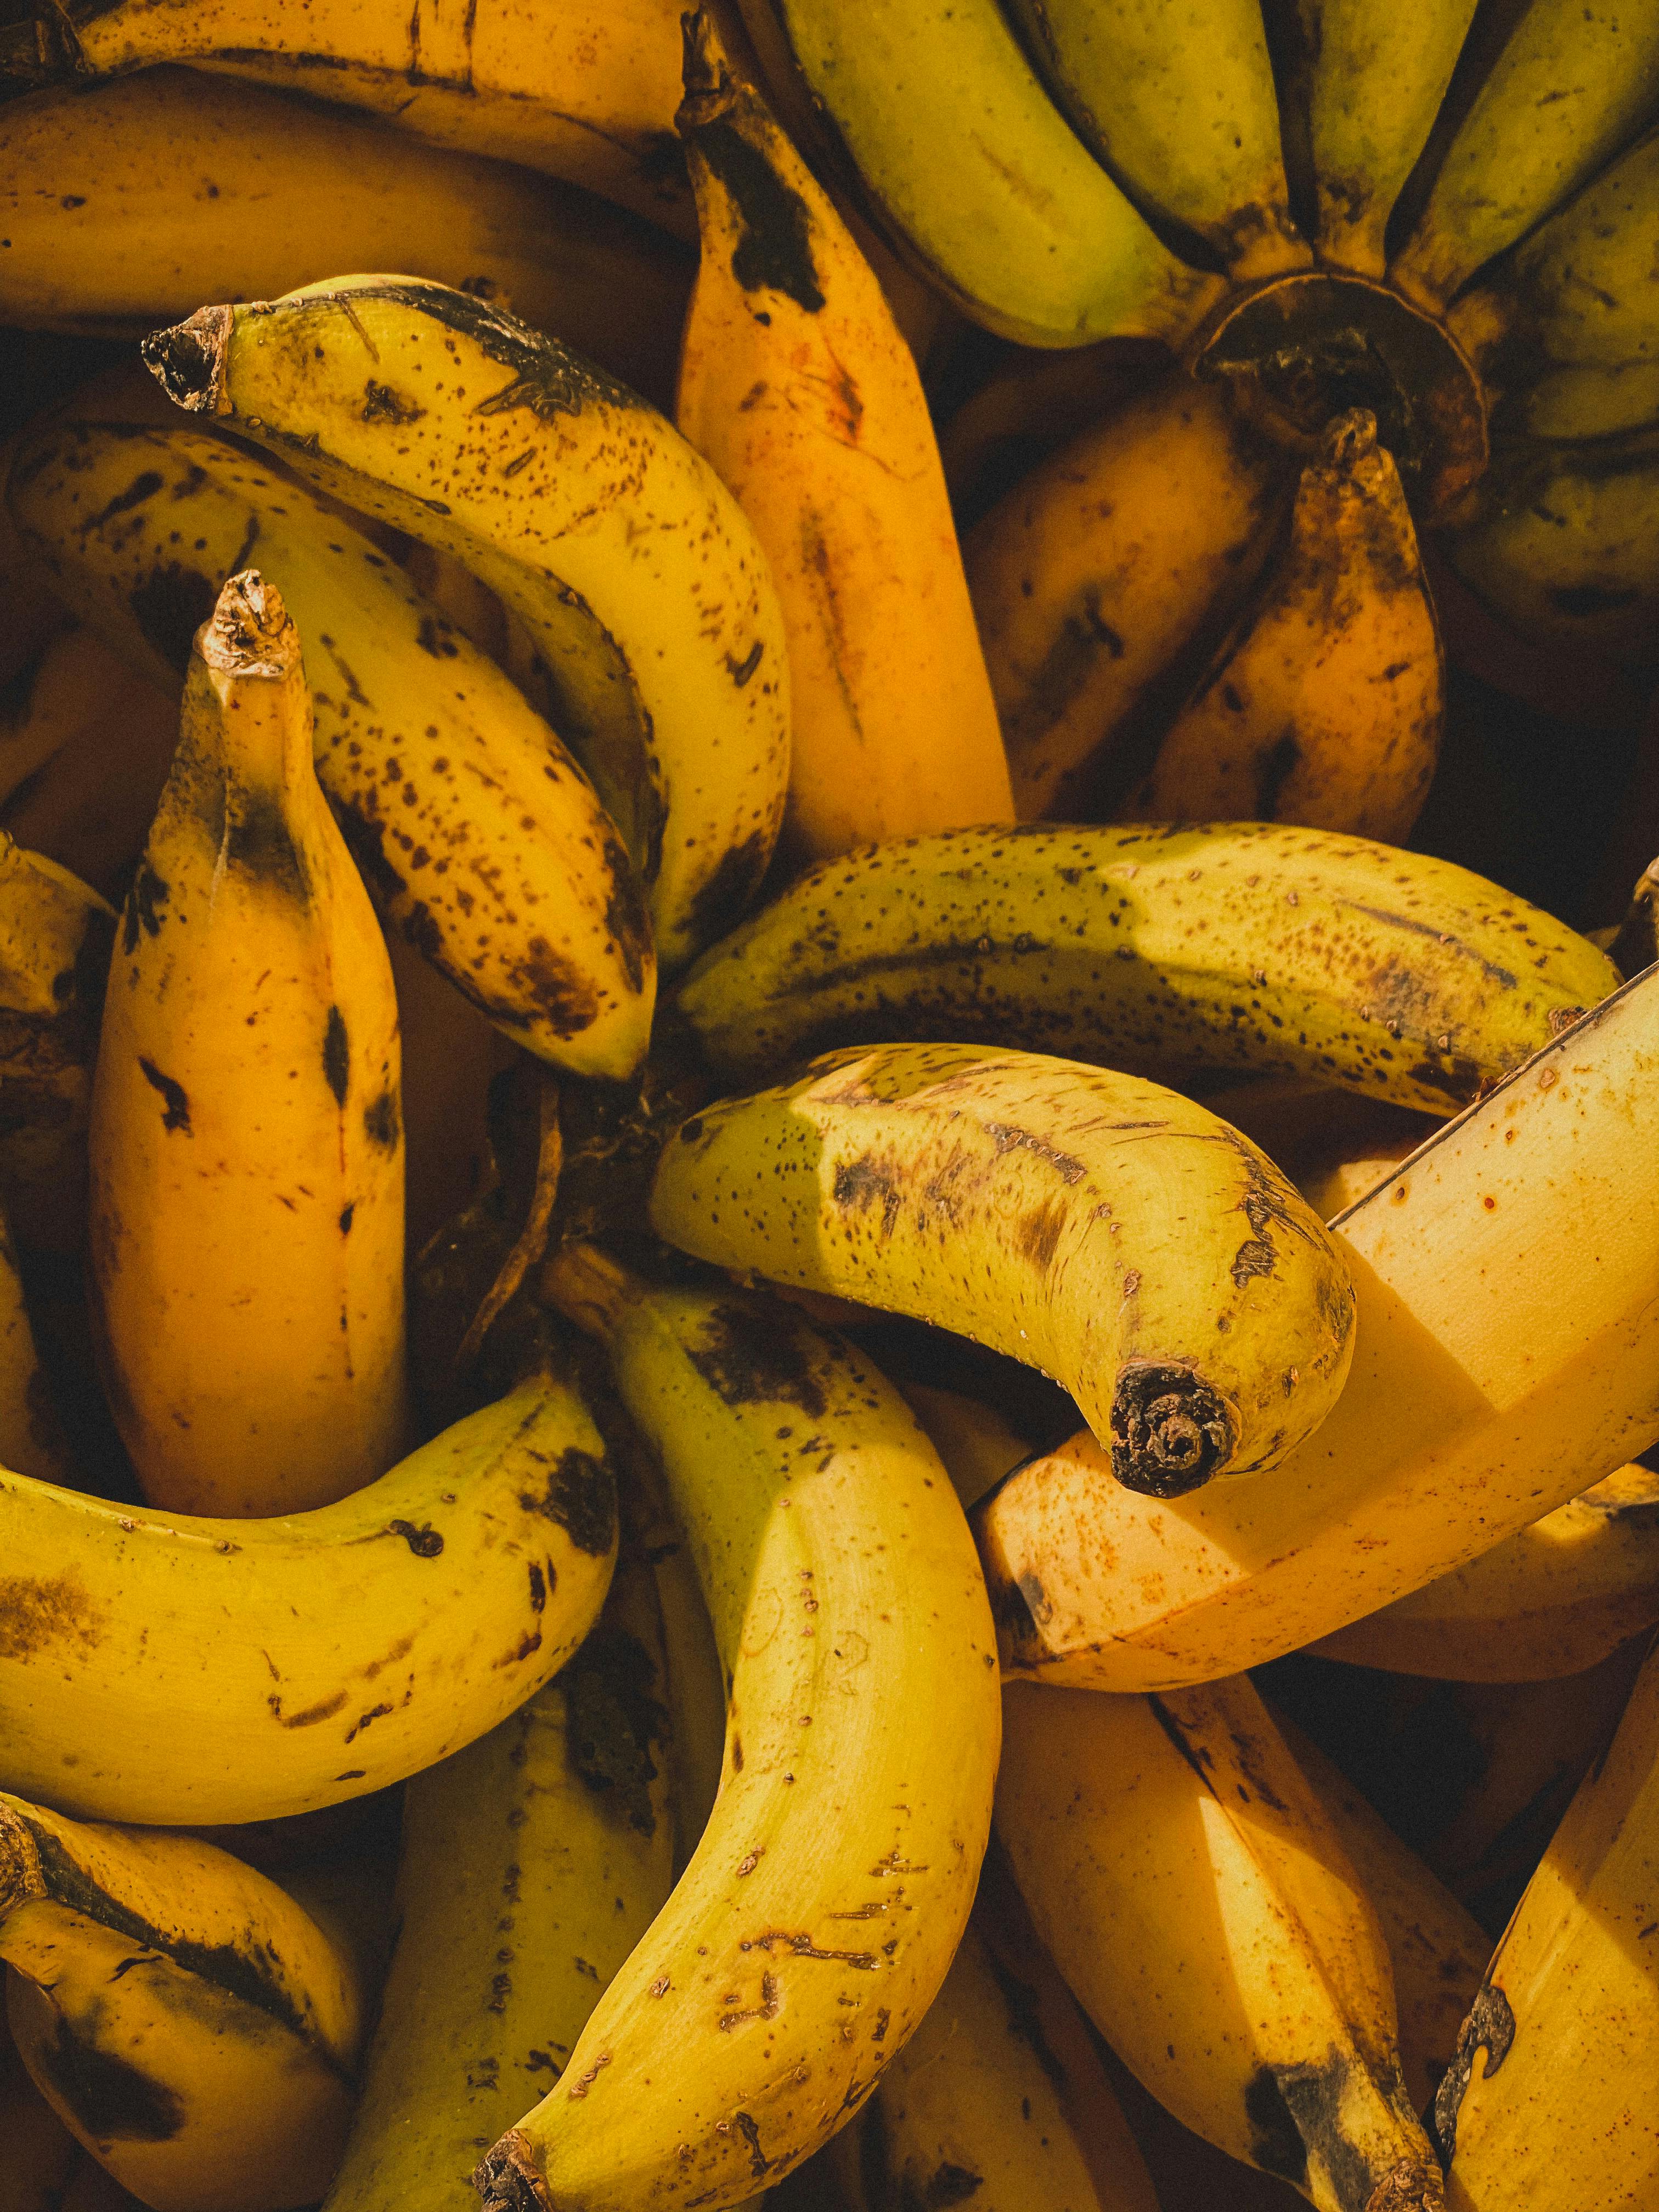 Gratis stockfoto van banaan, bananen, bananenblad.